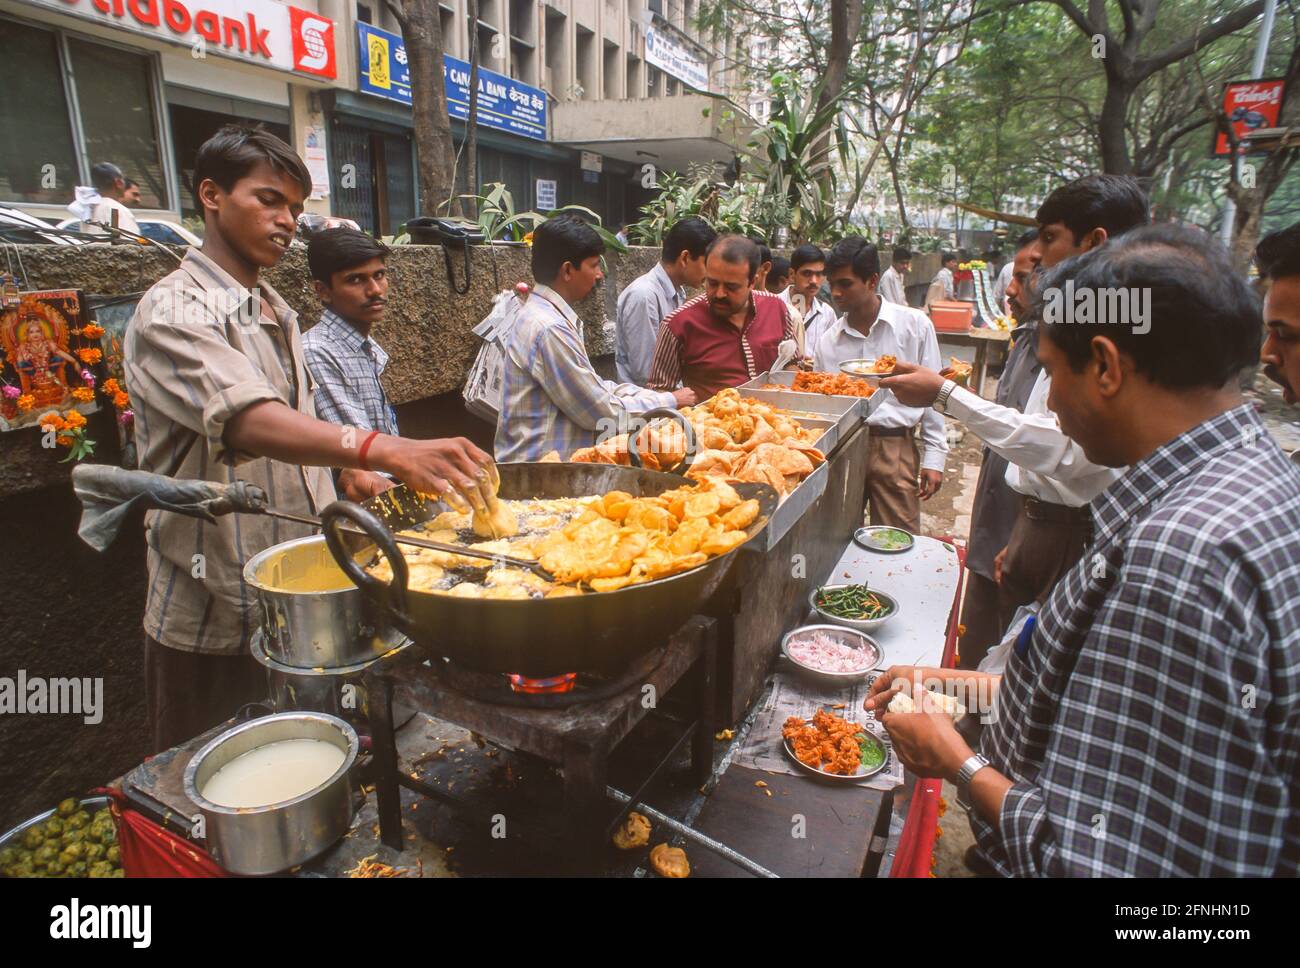 MUMBAI, INDIA - Street vendors cook fried food, Nariman Point neighborhood. Stock Photo